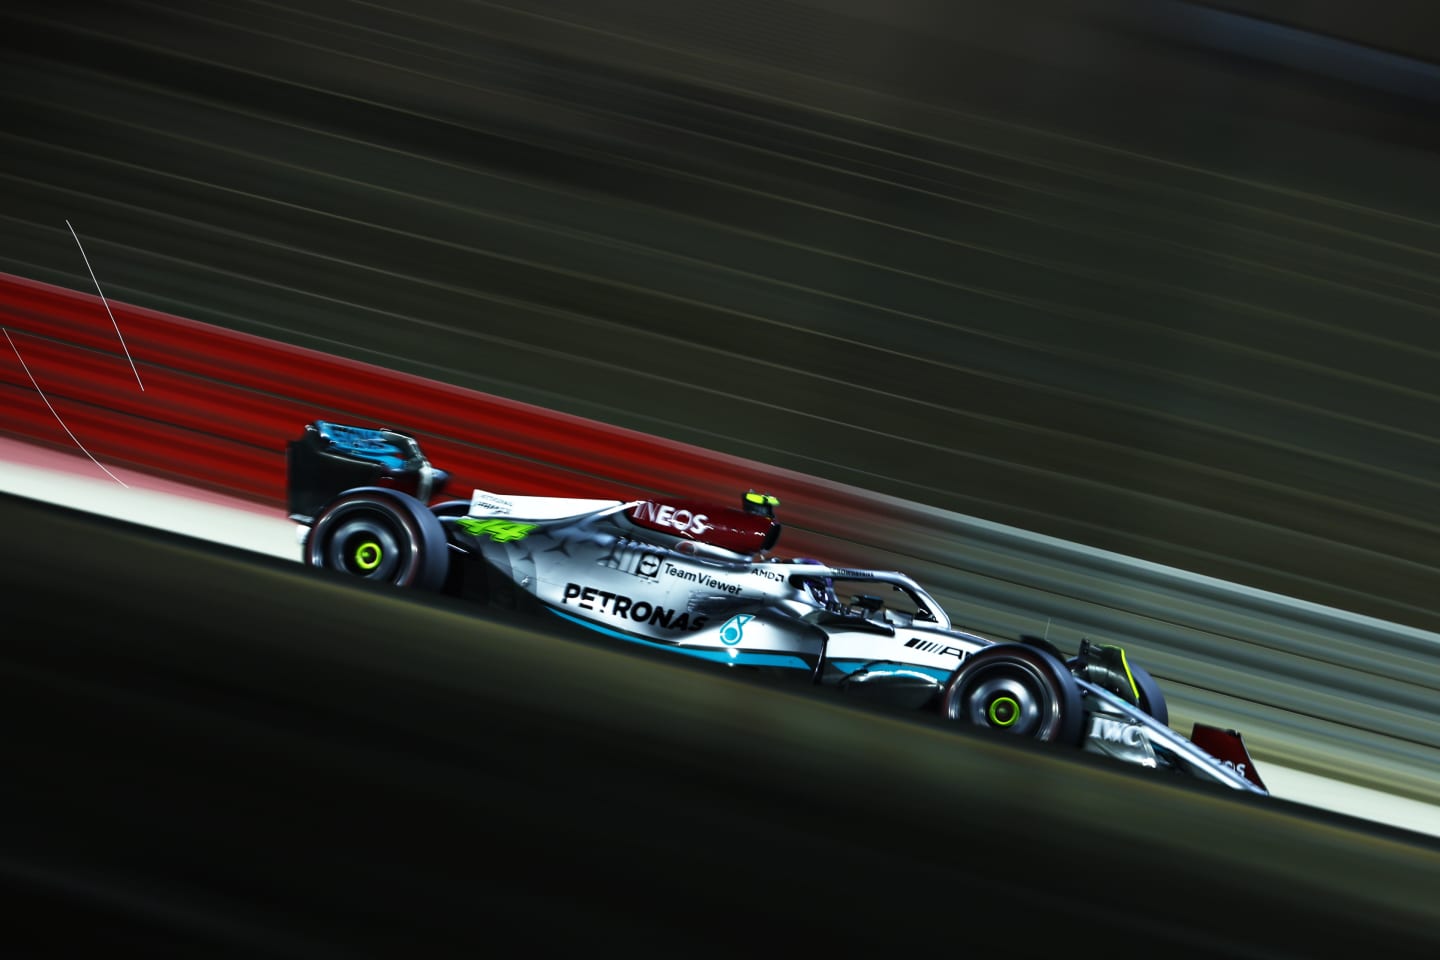 BAHRAIN, BAHRAIN - MARCH 11: Lewis Hamilton of Great Britain driving the (44) Mercedes AMG Petronas